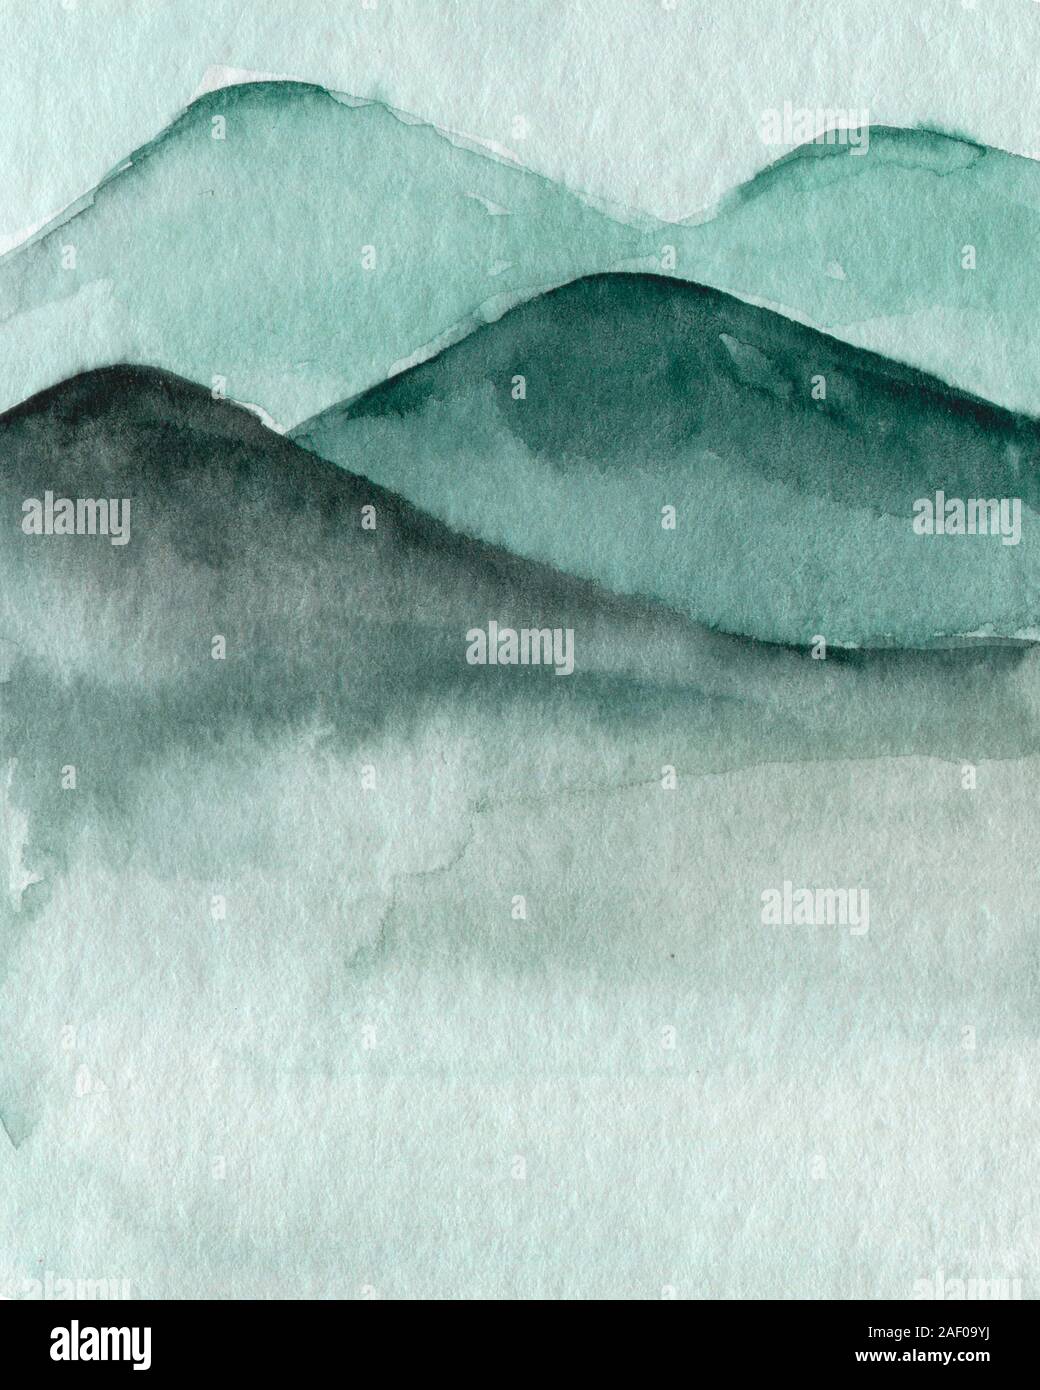 Illustration chinois. Les montagnes dans la brume, graphiques, inkblot photo Banque D'Images